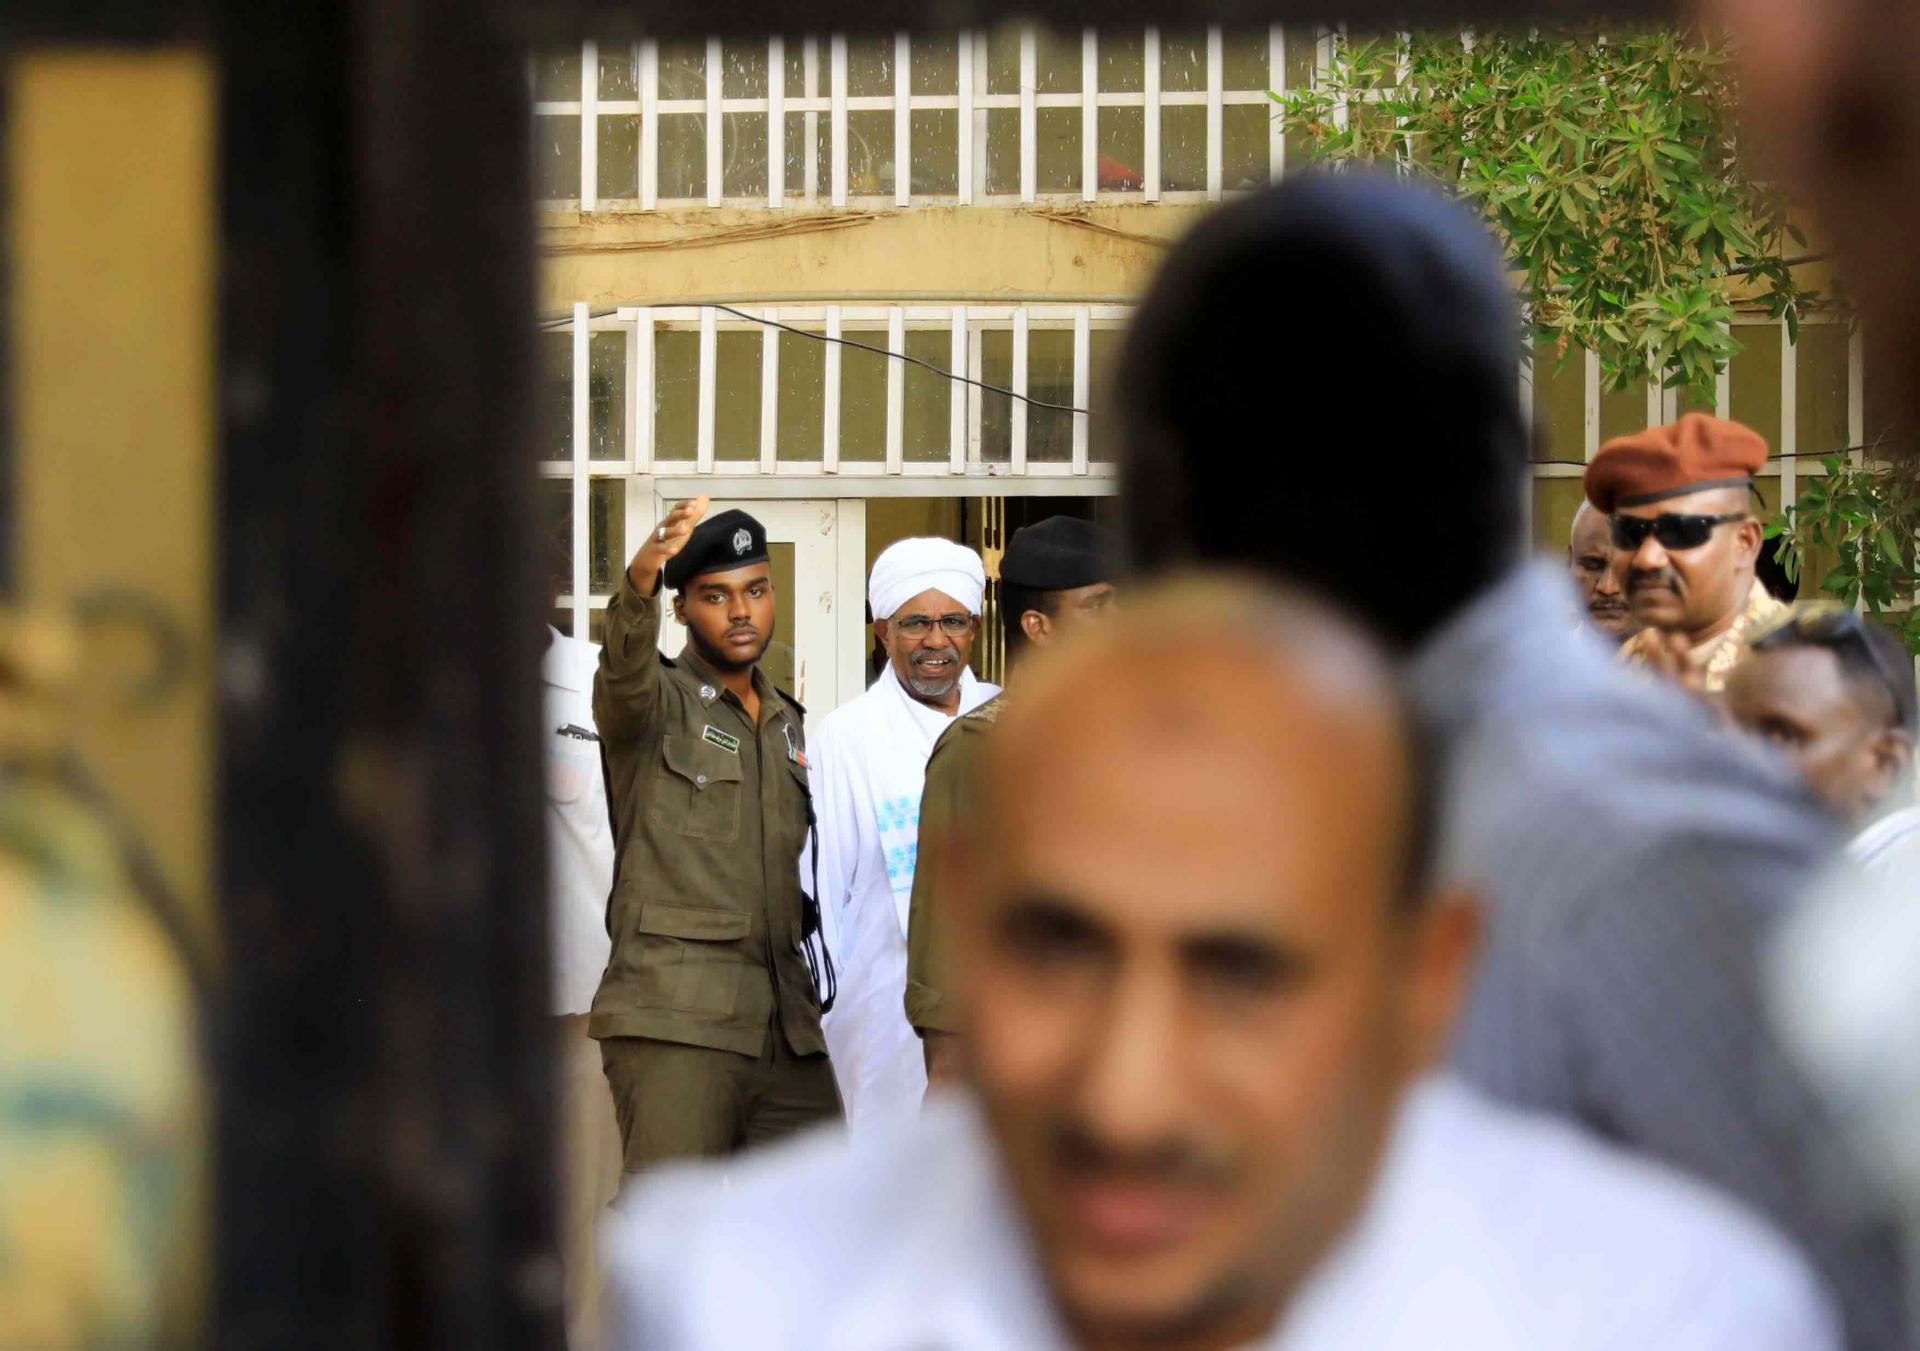 البشير عاد إلى السجن في خرطوم بحري بعد توجيه الاتهامات له